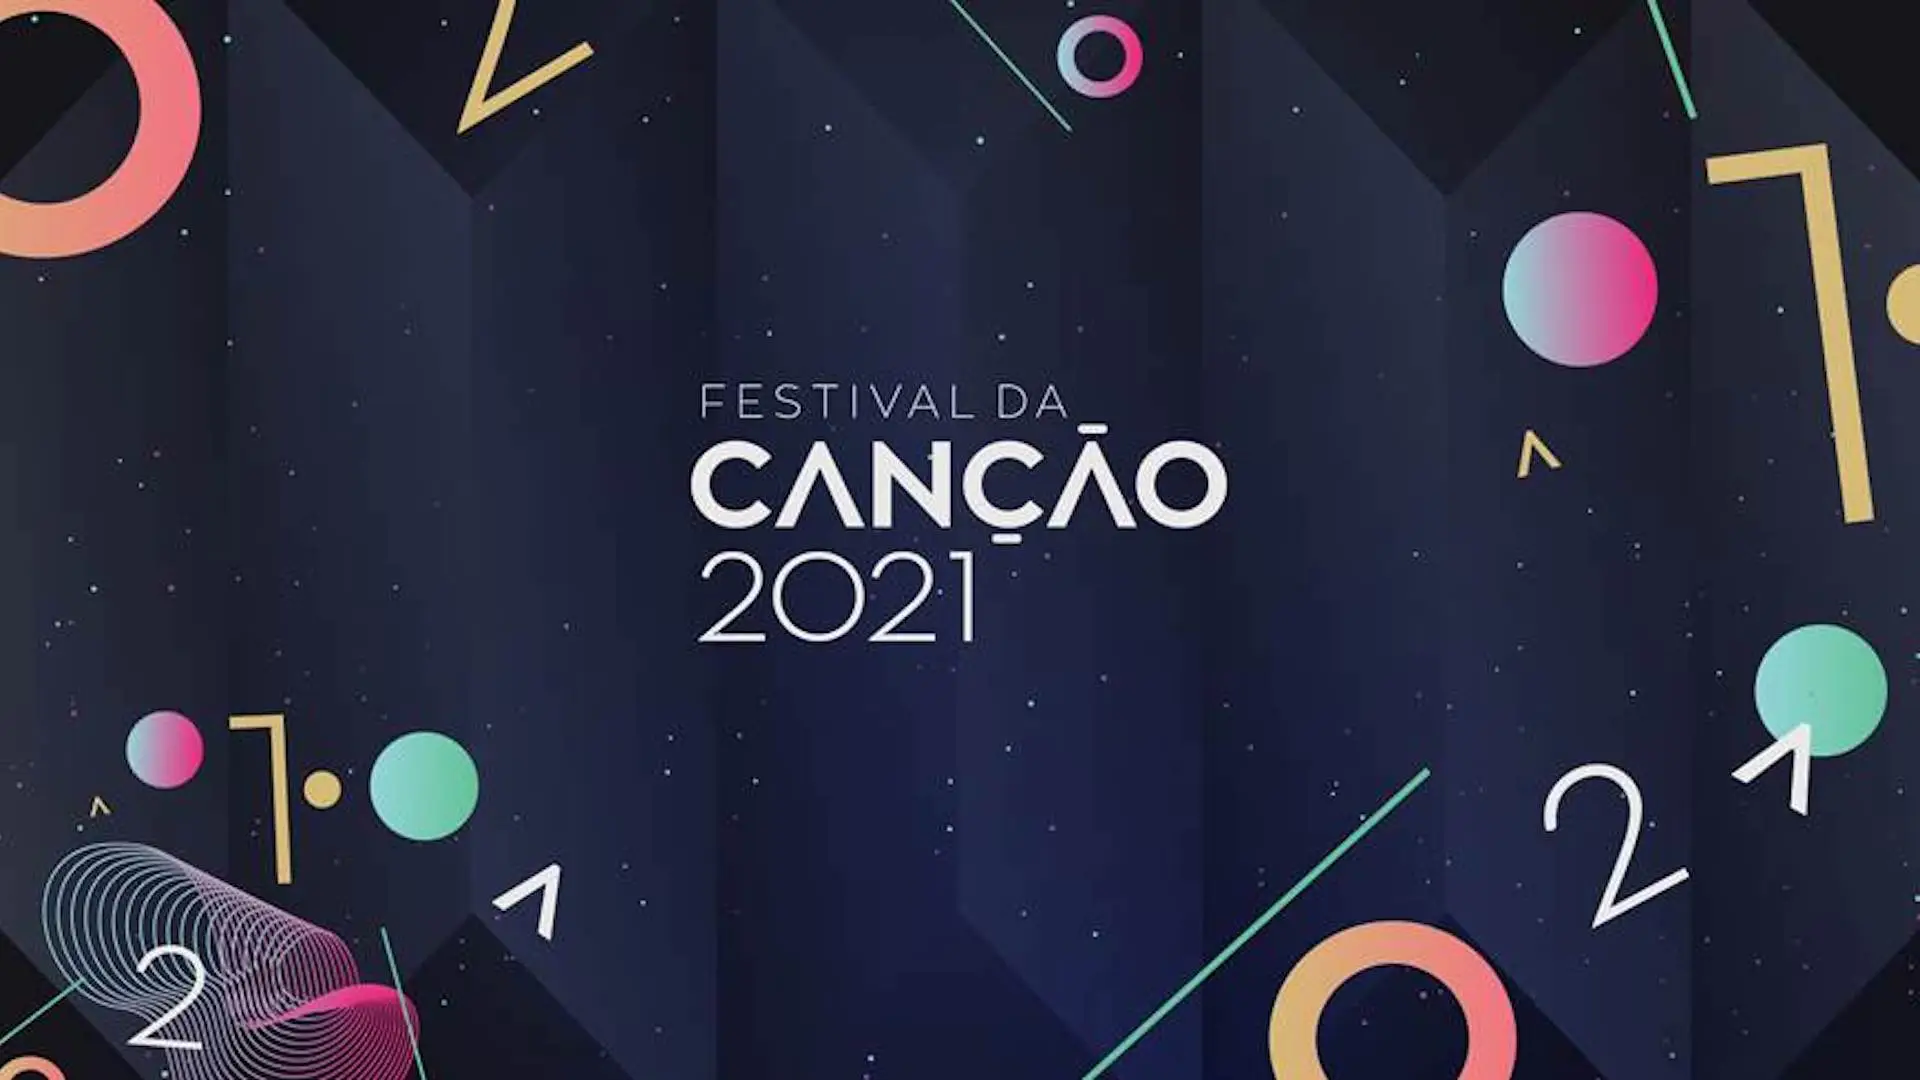 Festival Da Cancao 2021 Rtp